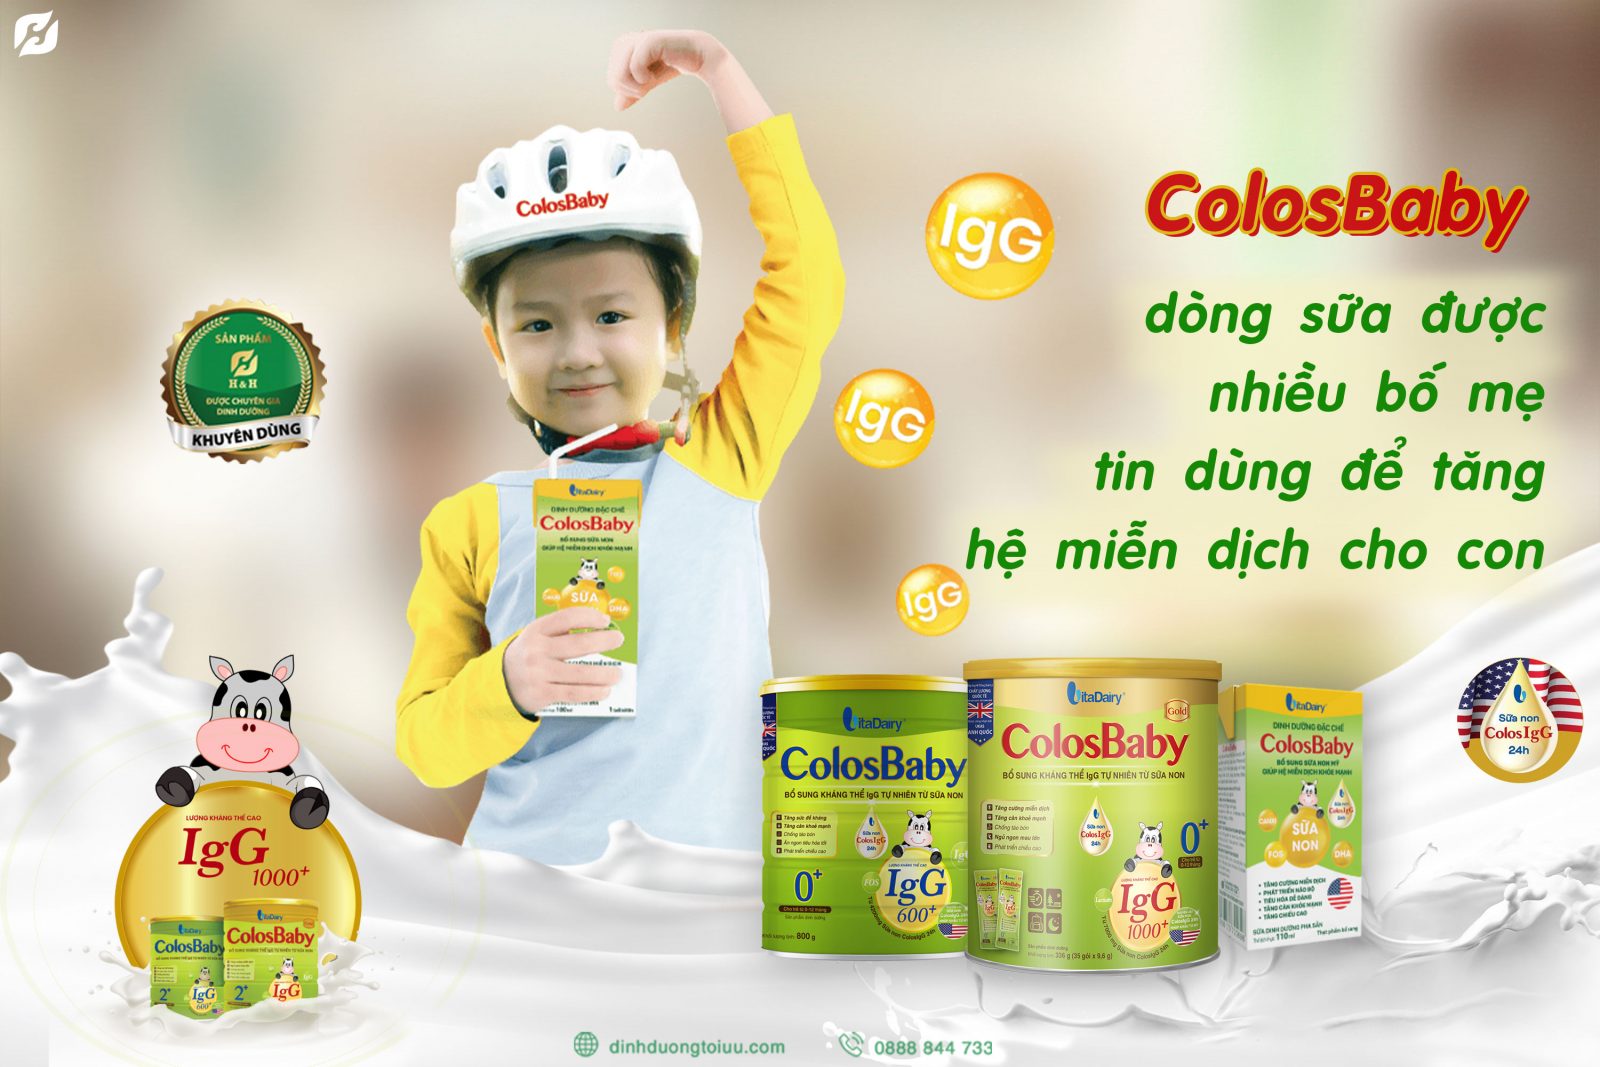 ColosBaby, dòng sữa được nhiều bố mẹ tin dùng để tăng hệ miễn dịch cho con tại H&H Nutrition